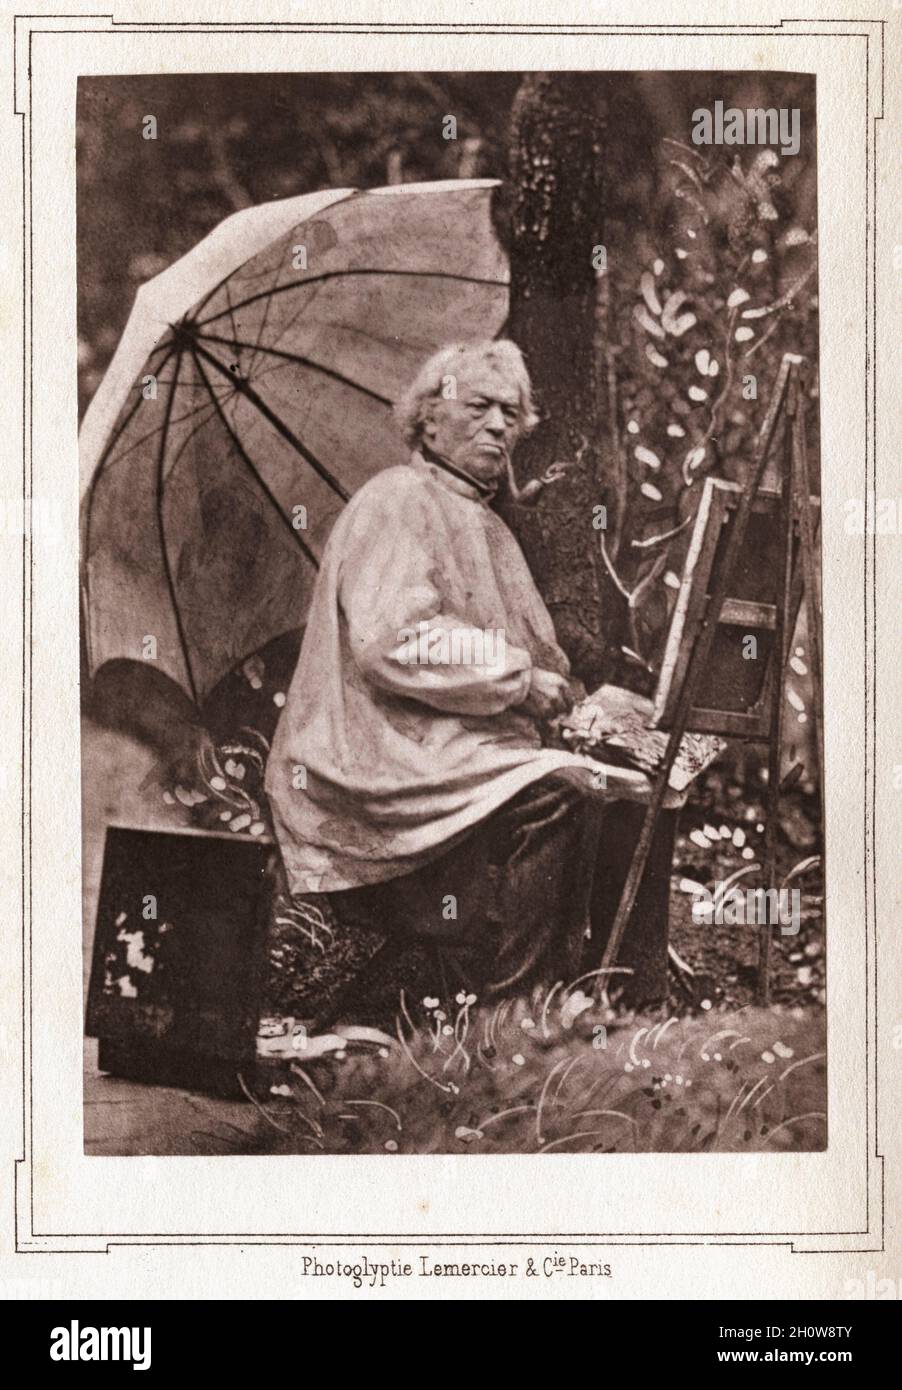 Ritratto del pittore francese Jean-Baptiste-Camille Corot (1796 - 1875) pittura all'aperto, circa 1871. Fotografia di Charles Paul Desavary (1837 - 1885) Foto Stock